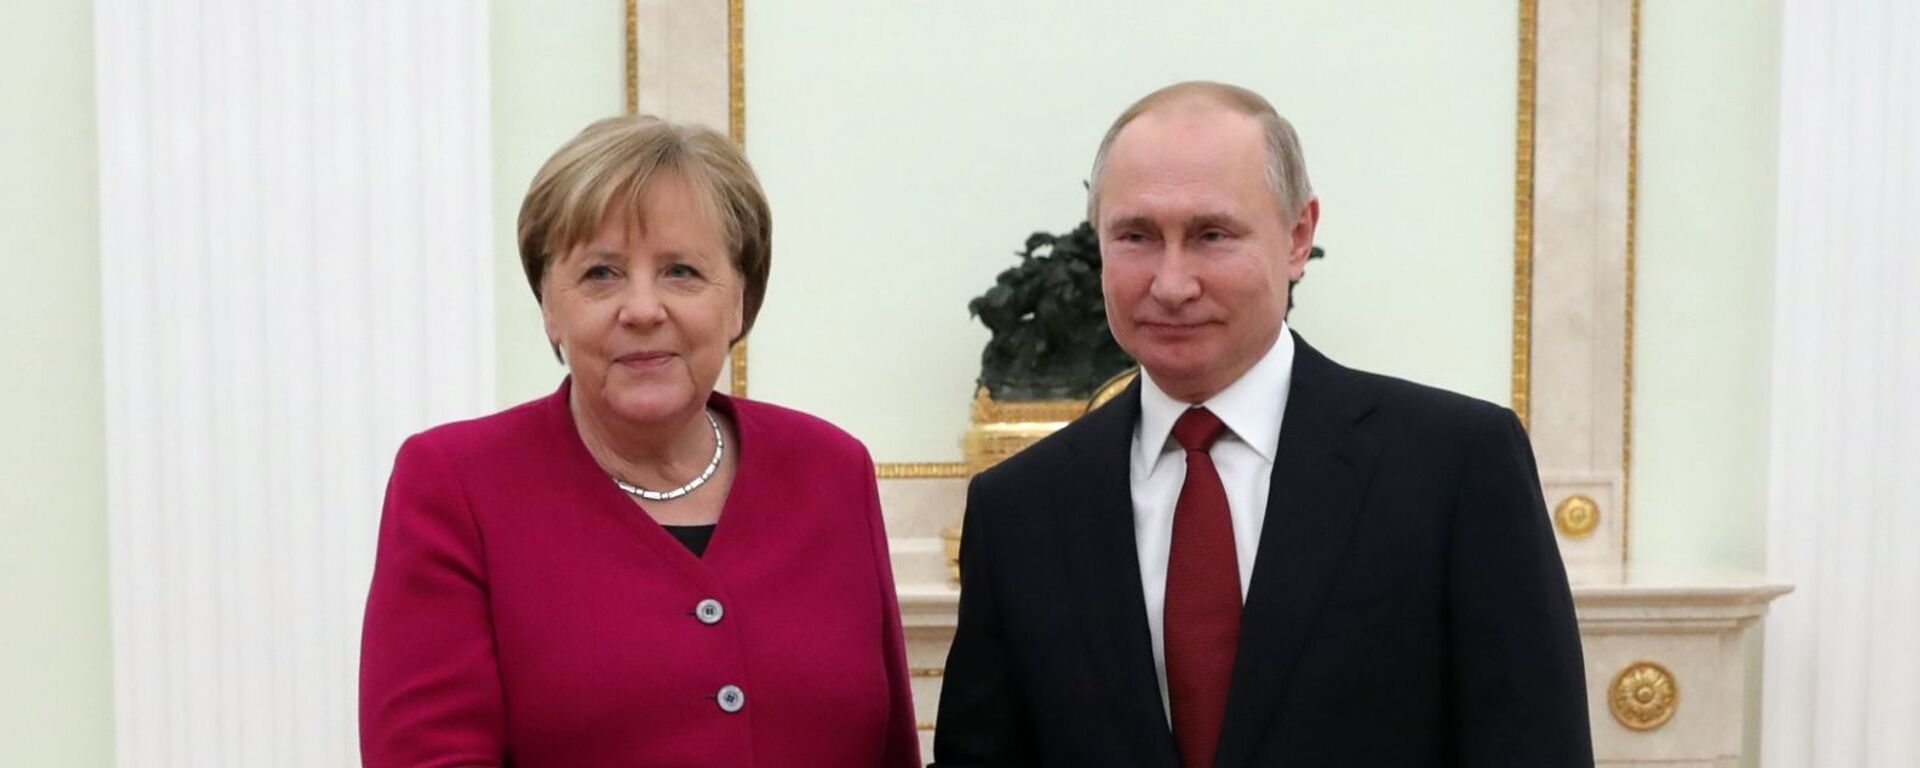 Президент РФ Владимир Путин и федеральный канцлер Германии Ангела Меркель - Sputnik Беларусь, 1920, 05.06.2021